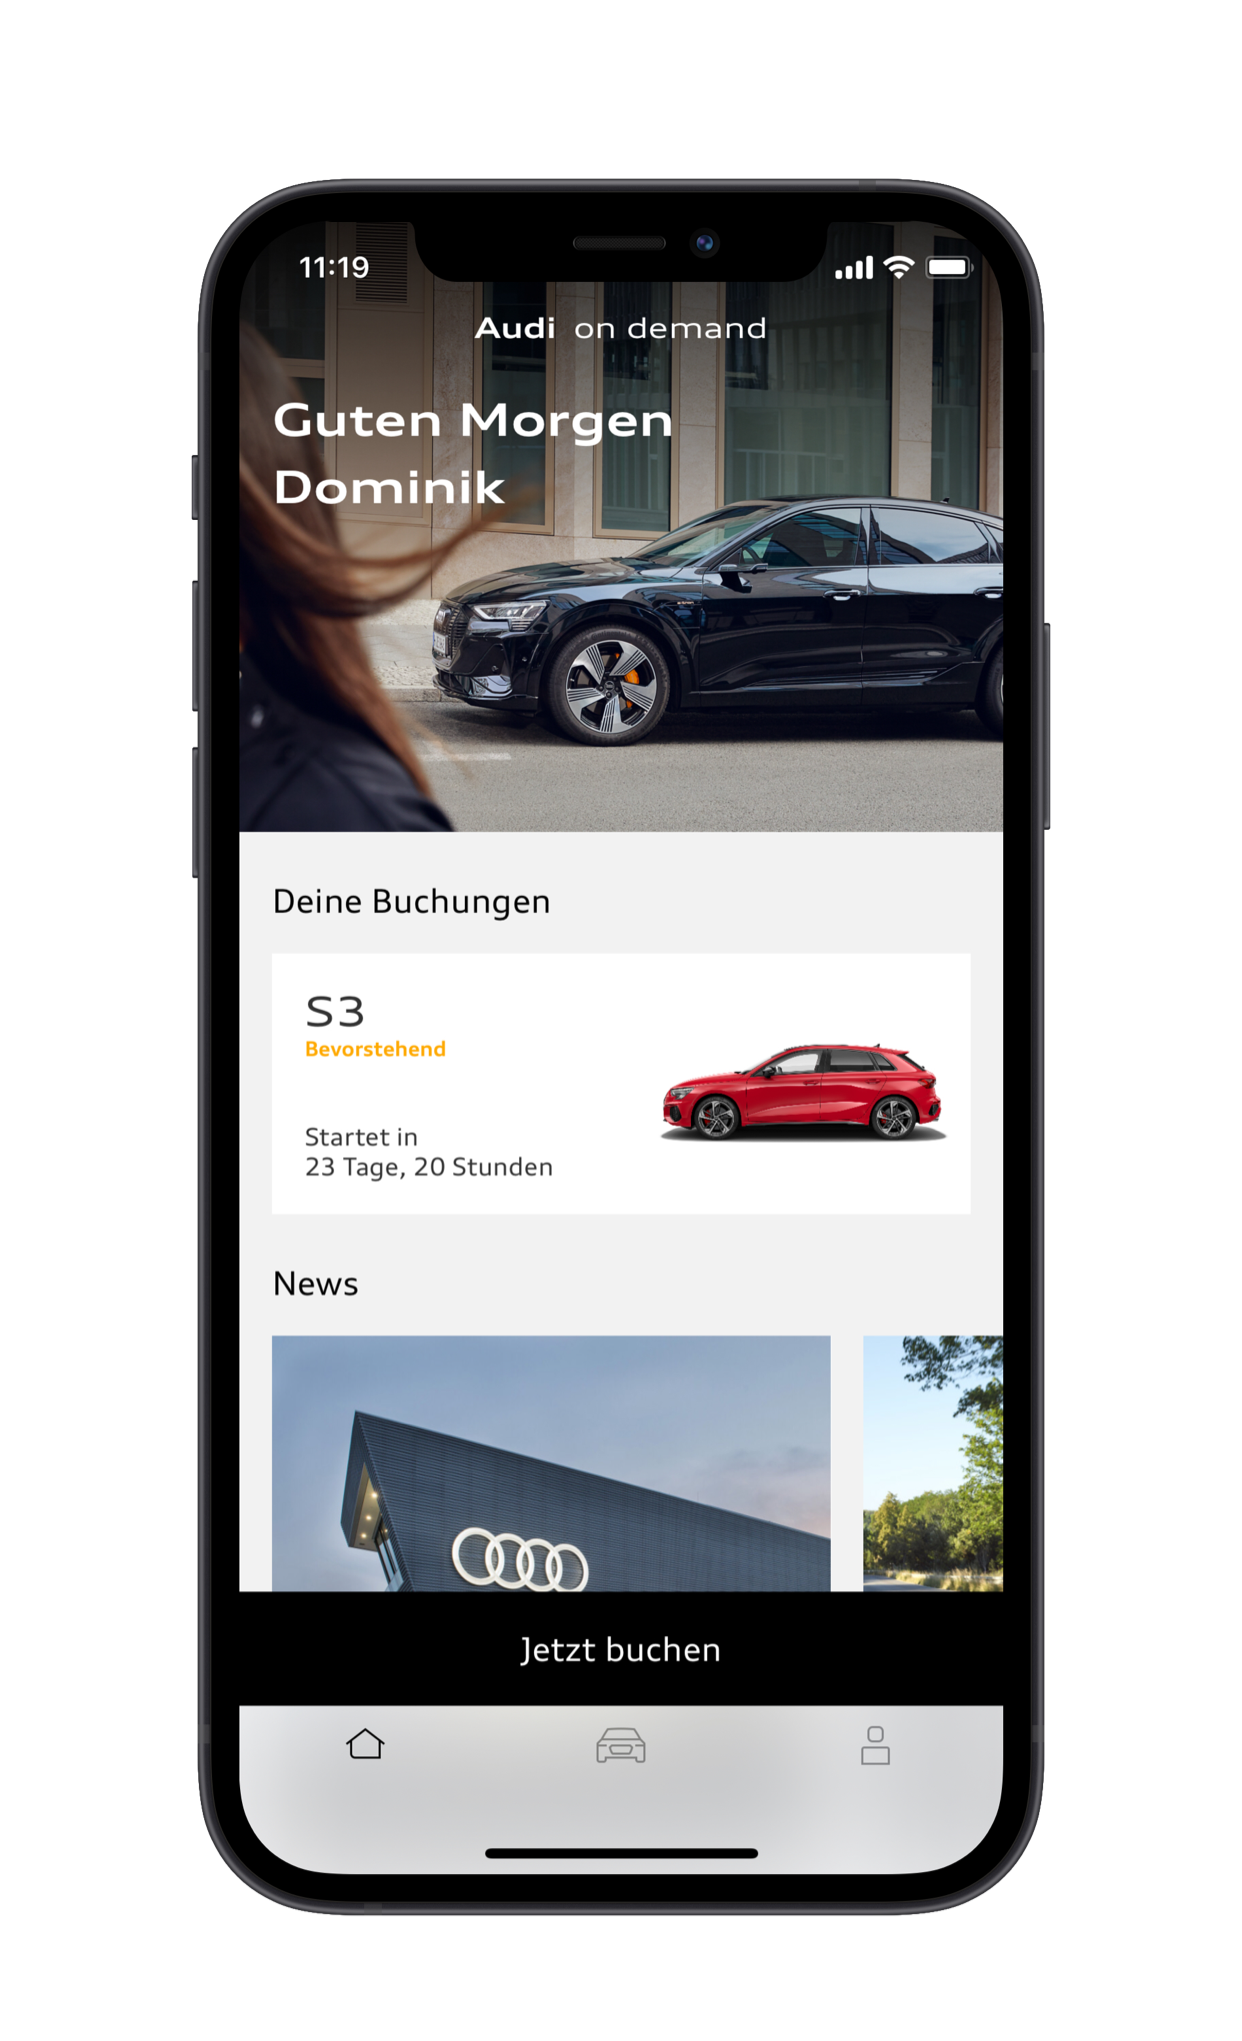 Audi baut Premium-Mobilitätsangebot Audi on demand in Deutschland weiter aus